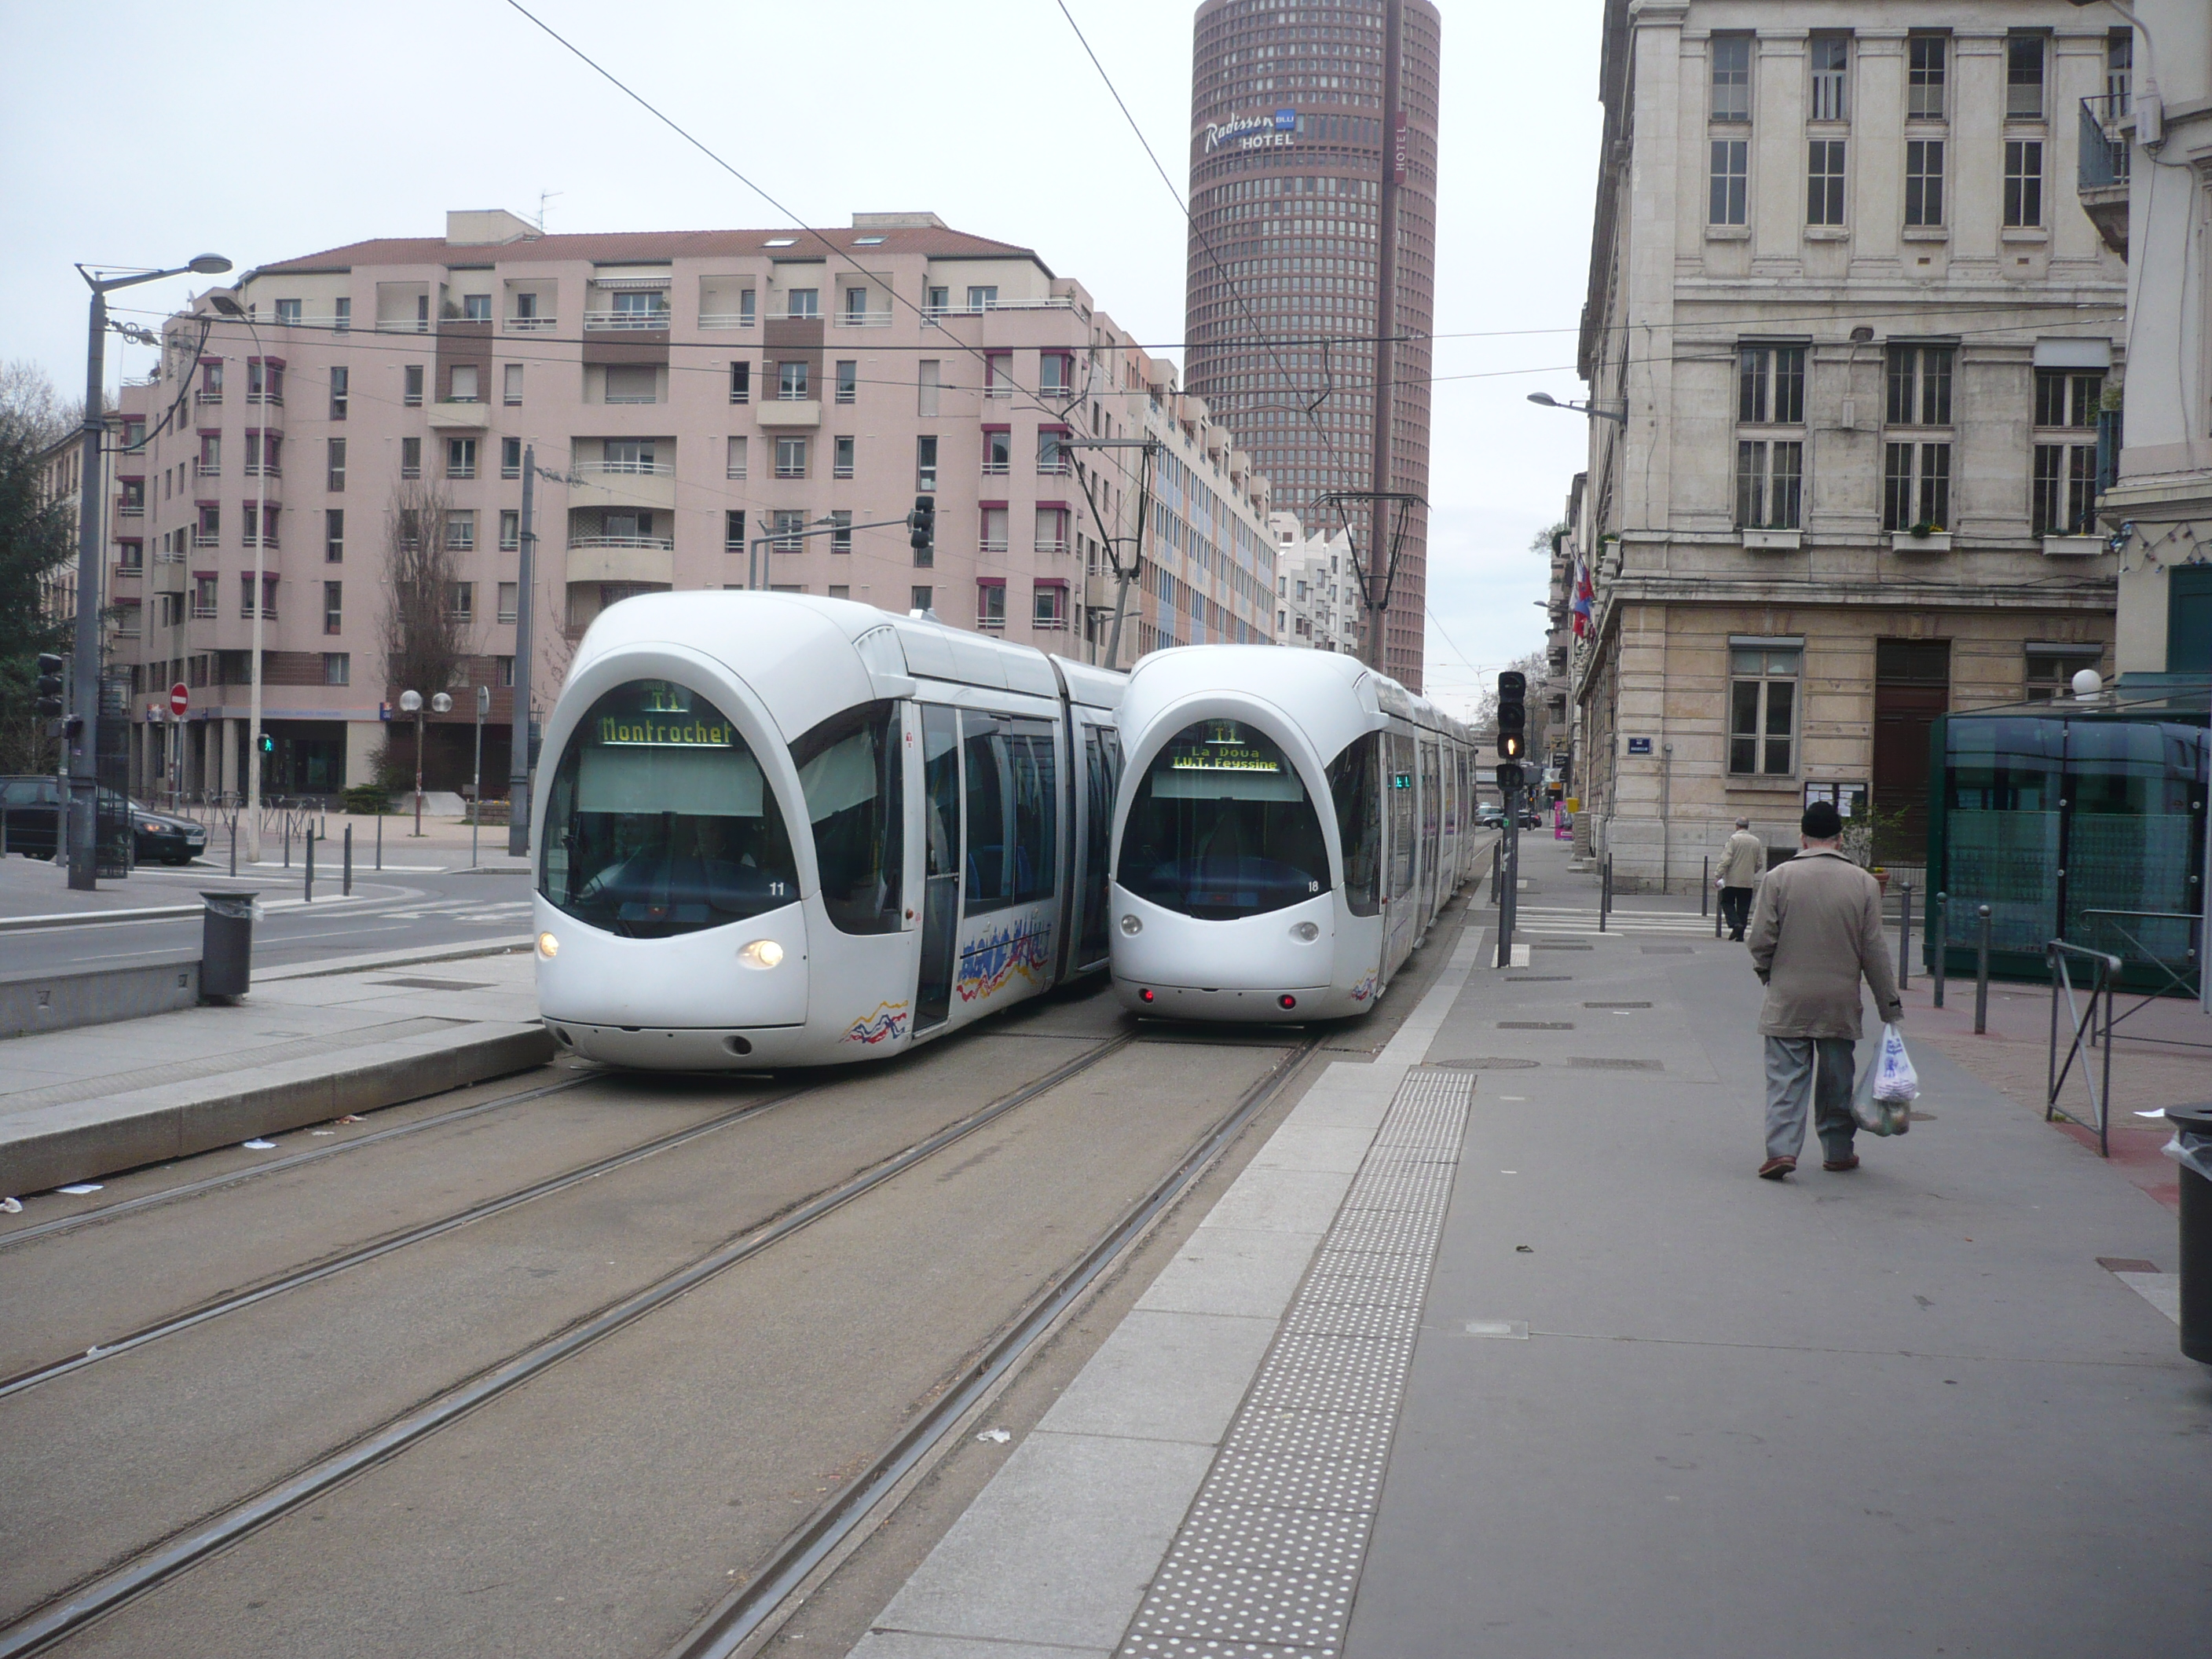 Lyon trams